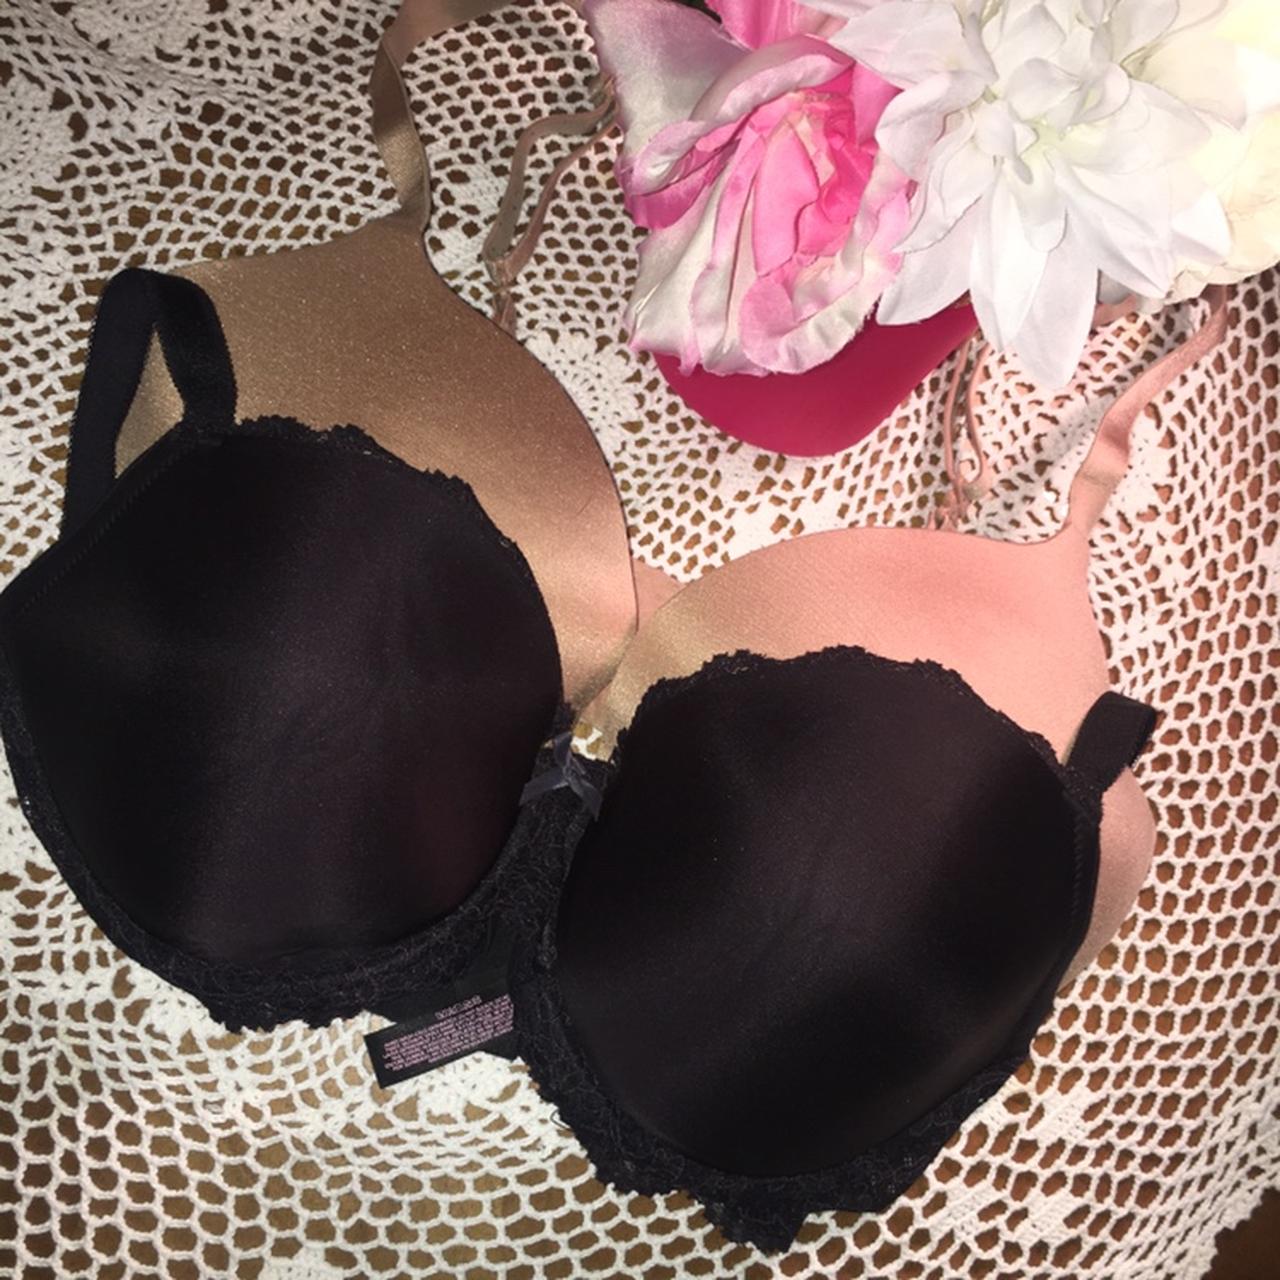 Victoria's Secret strapless bra 34DDD Nude NOTE- - Depop